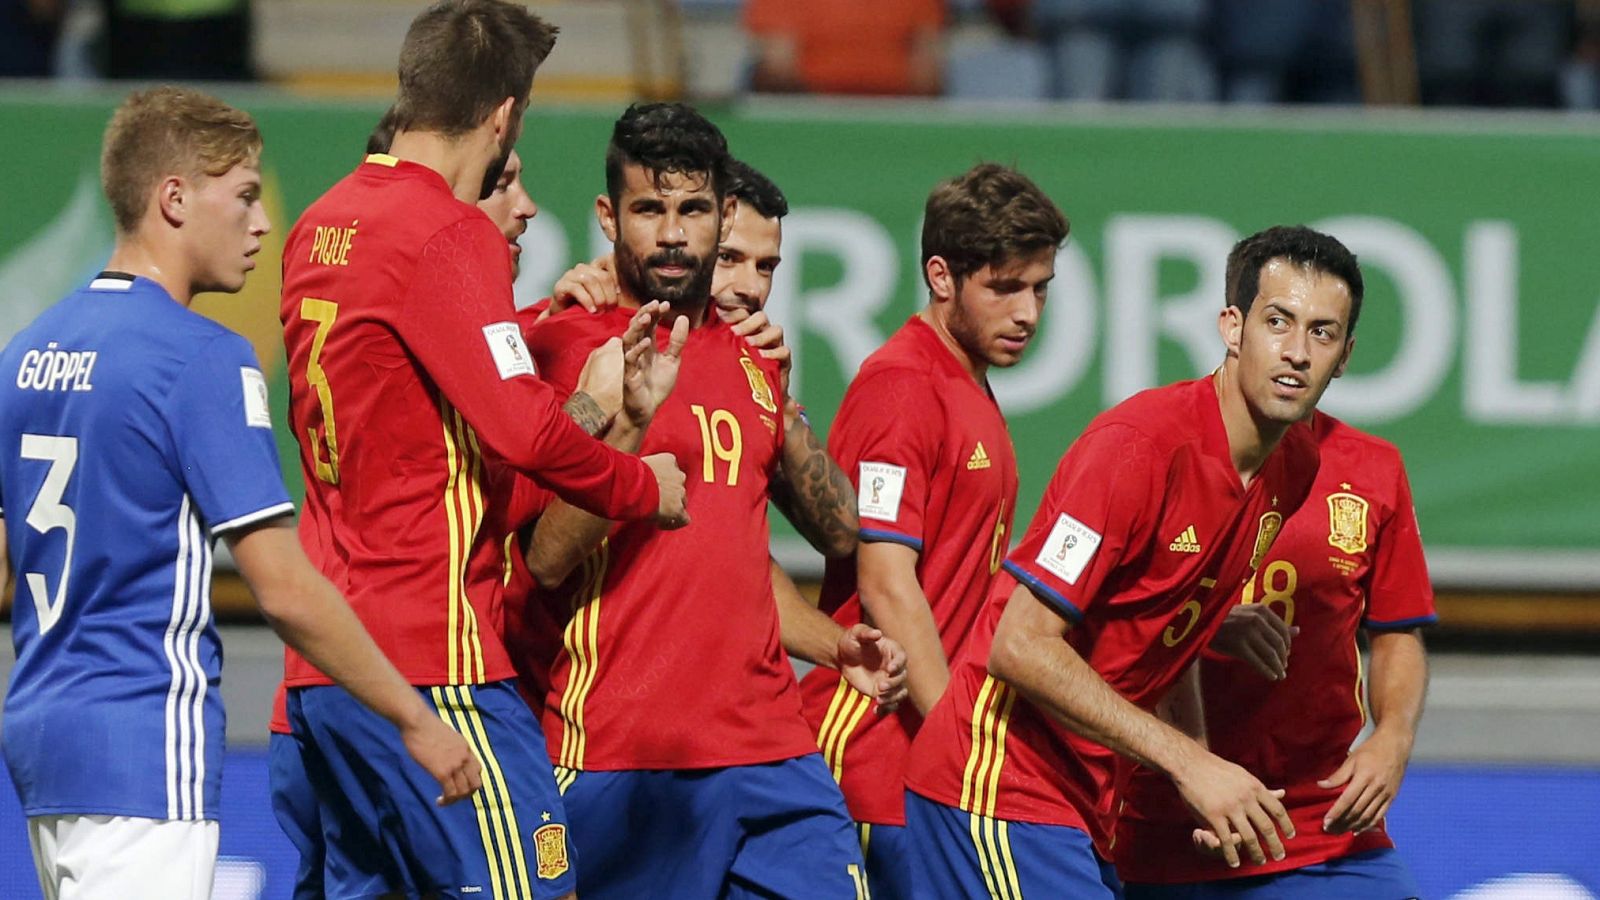 La selección española es una de las favoritas en la próxima Liga de Naciones.